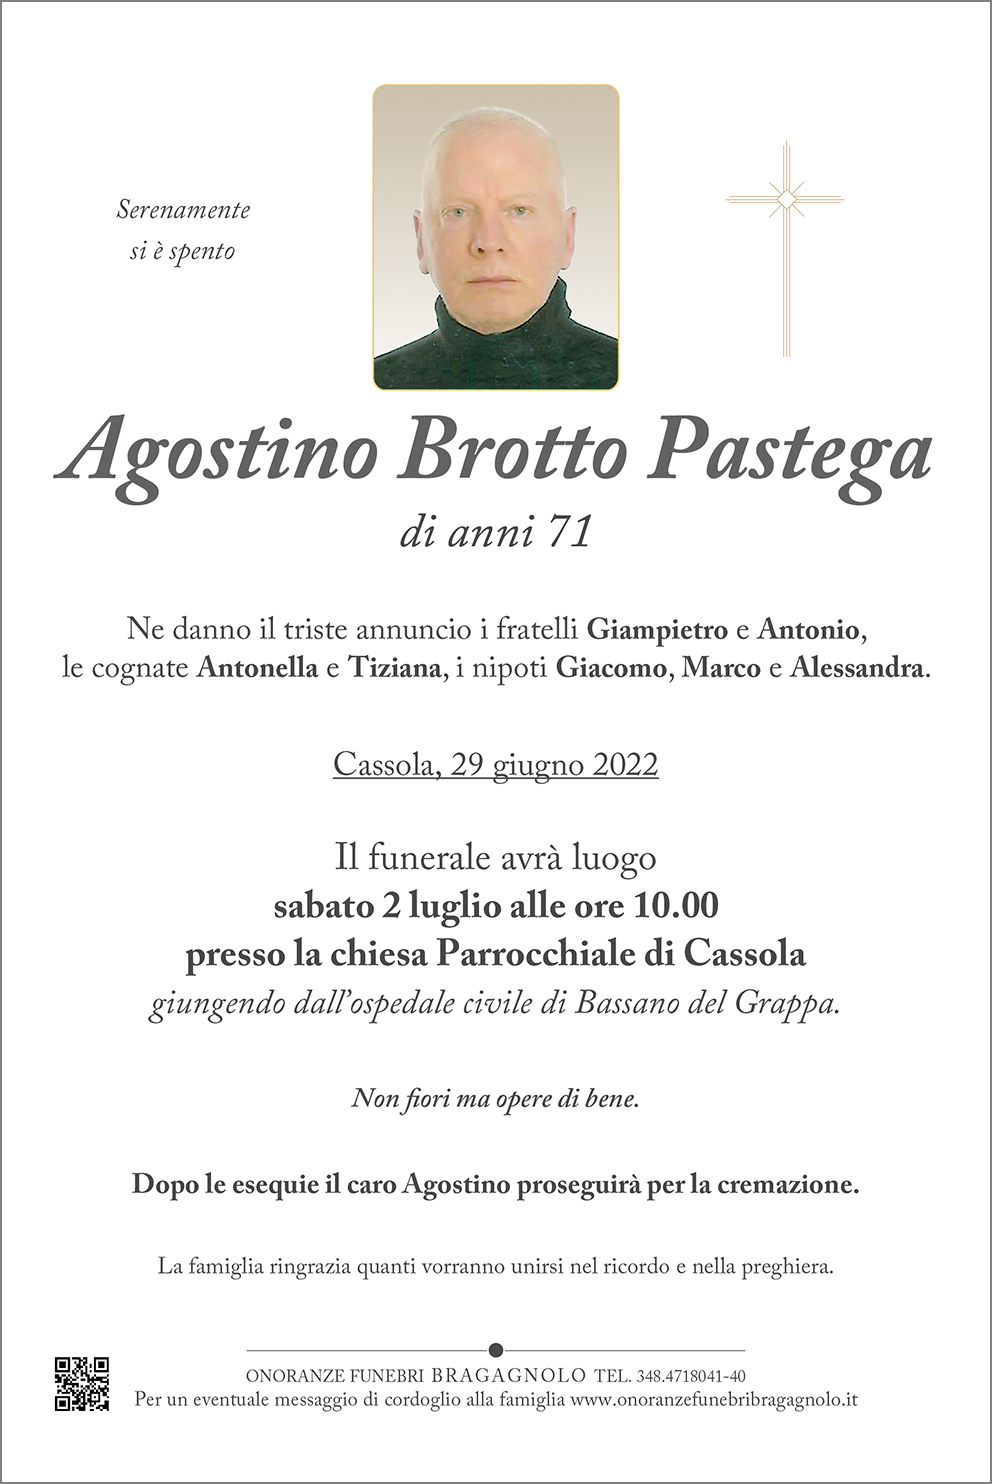 Agostino Brotto Pastega